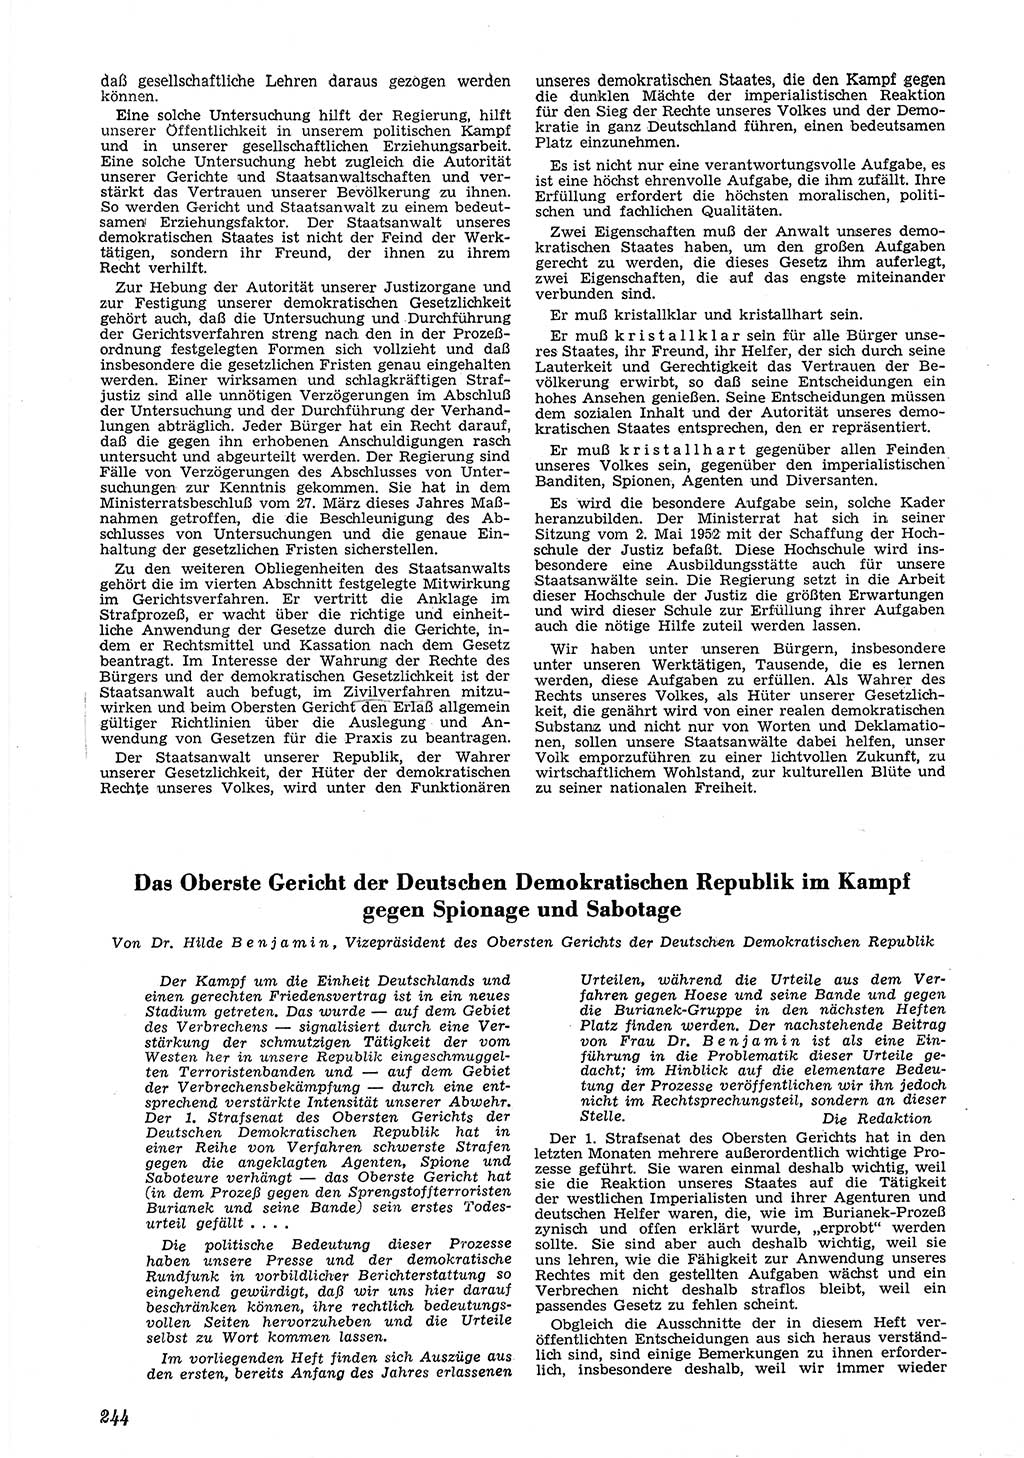 Neue Justiz (NJ), Zeitschrift für Recht und Rechtswissenschaft [Deutsche Demokratische Republik (DDR)], 6. Jahrgang 1952, Seite 244 (NJ DDR 1952, S. 244)